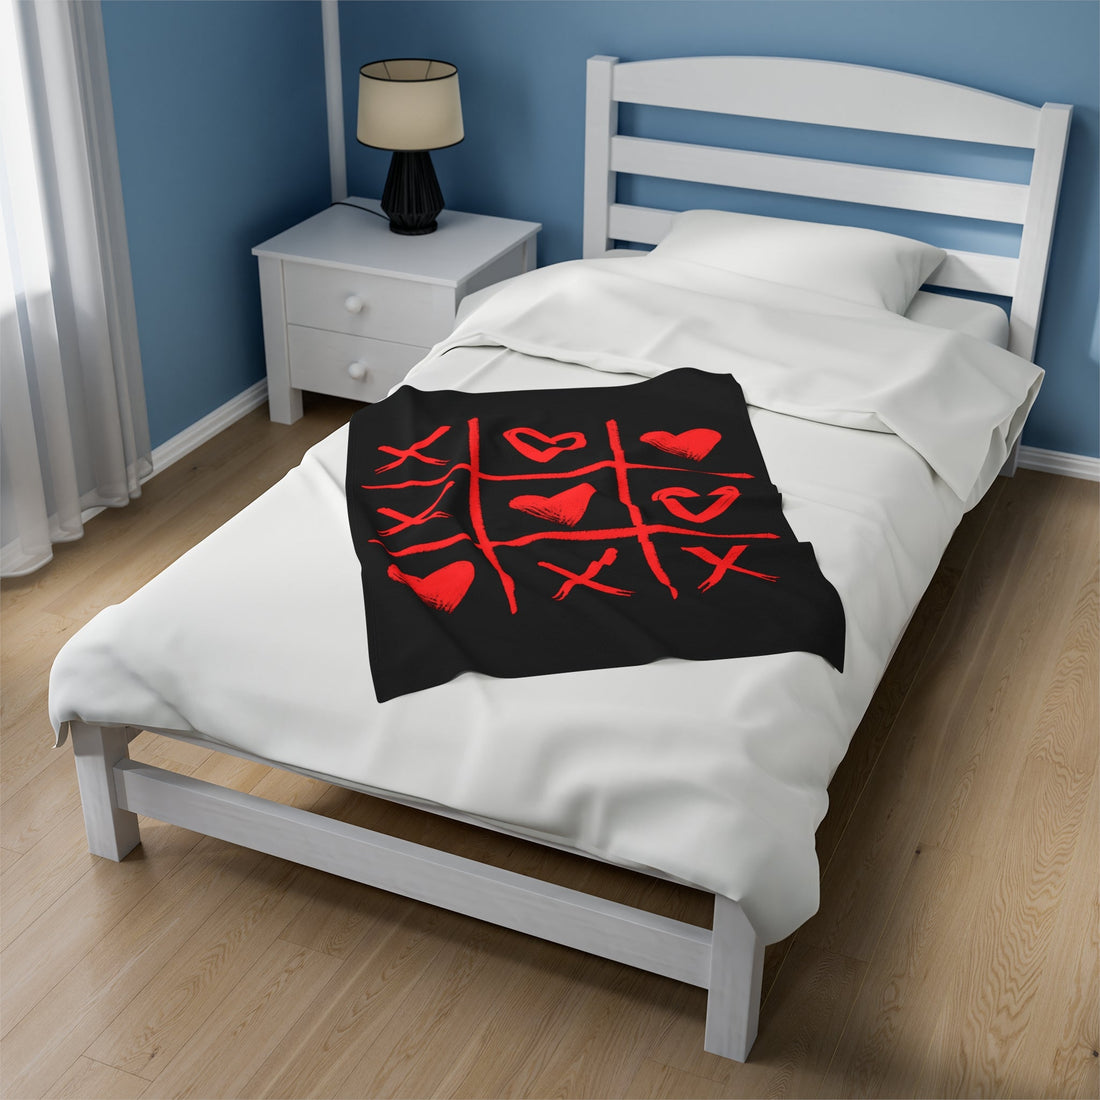 Tic Tac Love Velveteen Plush Blanket - All Over Prints - Positively Sassy - Tic Tac Love Velveteen Plush Blanket